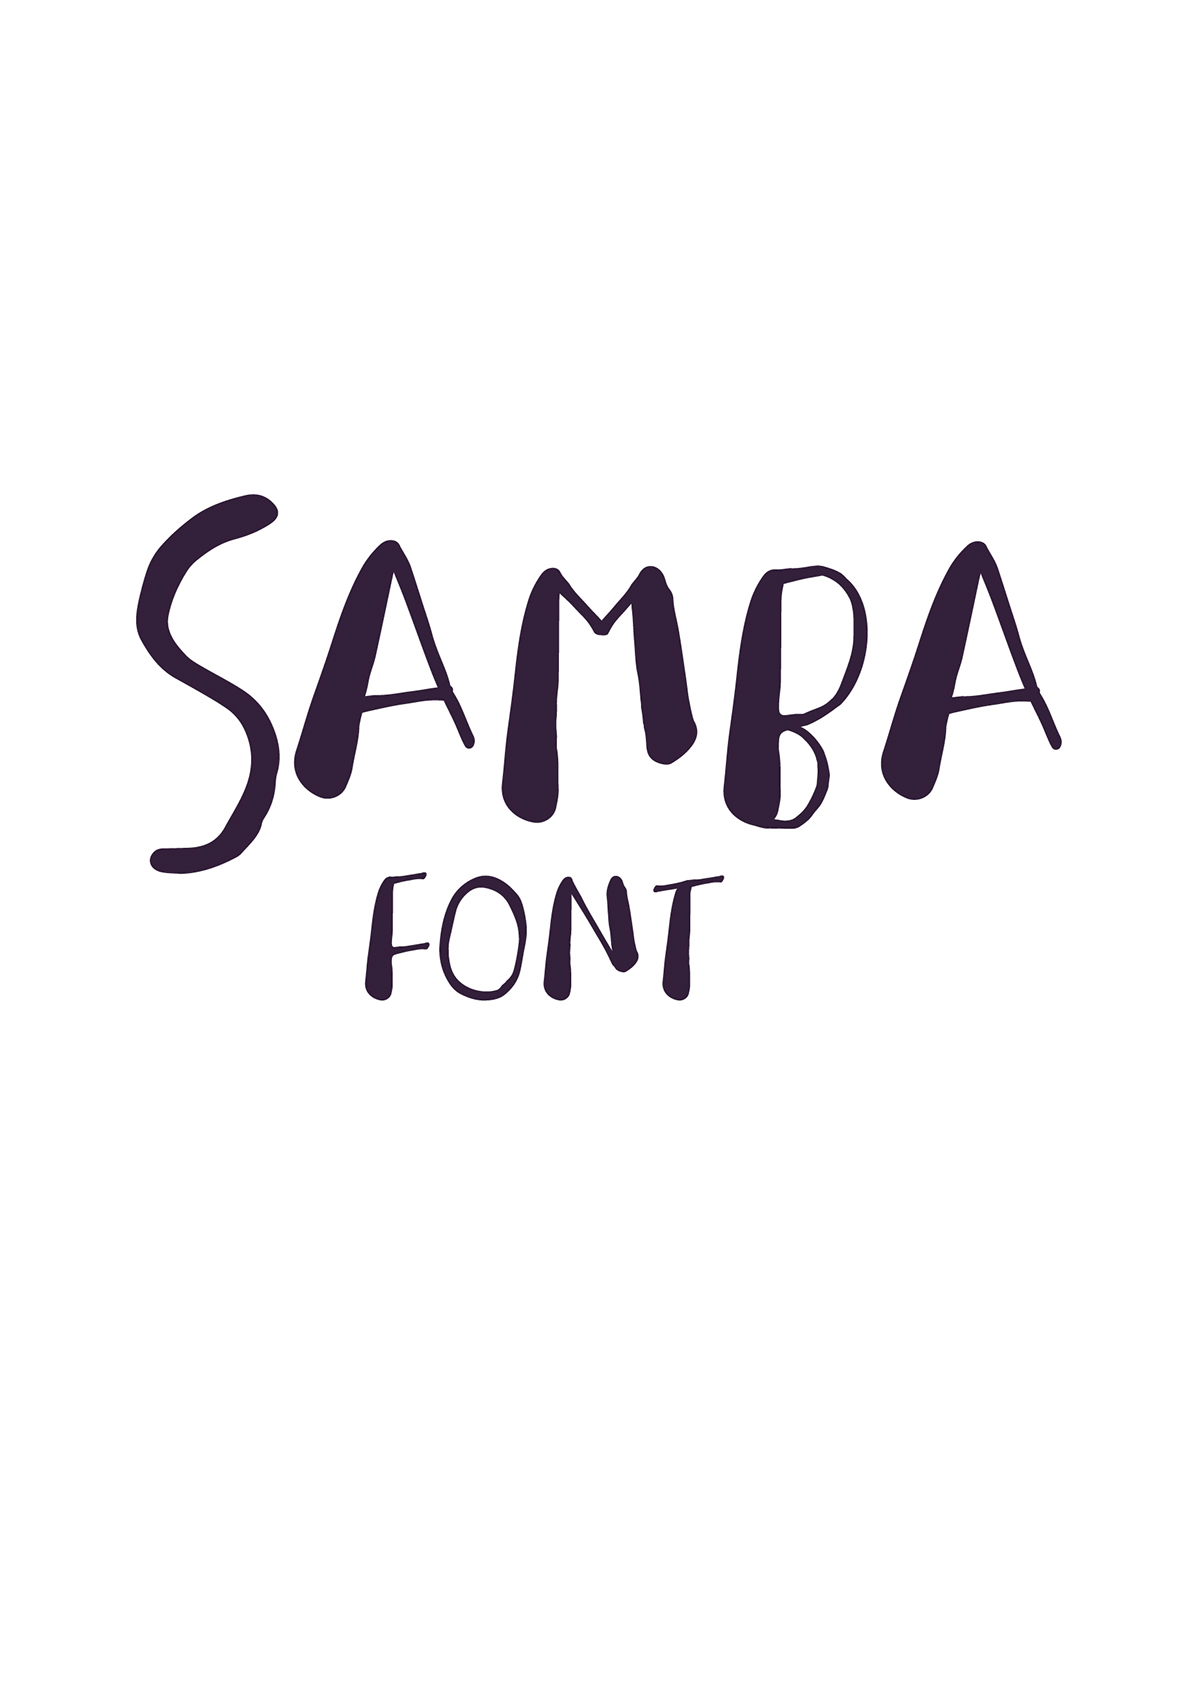 samba font illustrations color design wilson simonal poster font design Brazil Samba making of